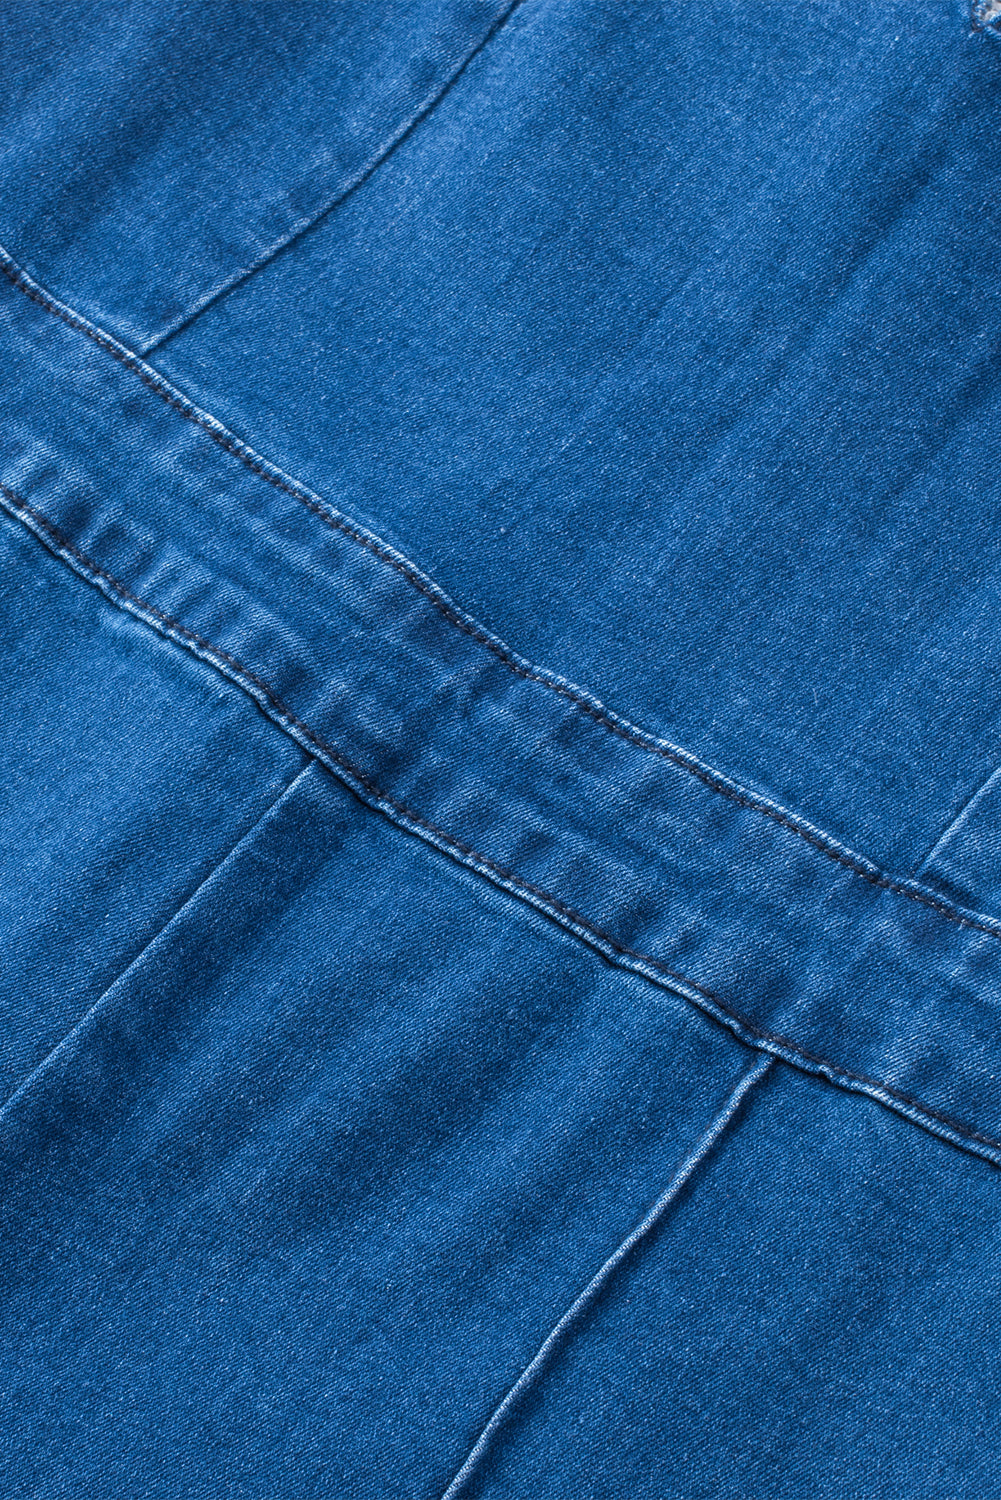 Combinaison en jean bleue à bretelles fines et encoche en V